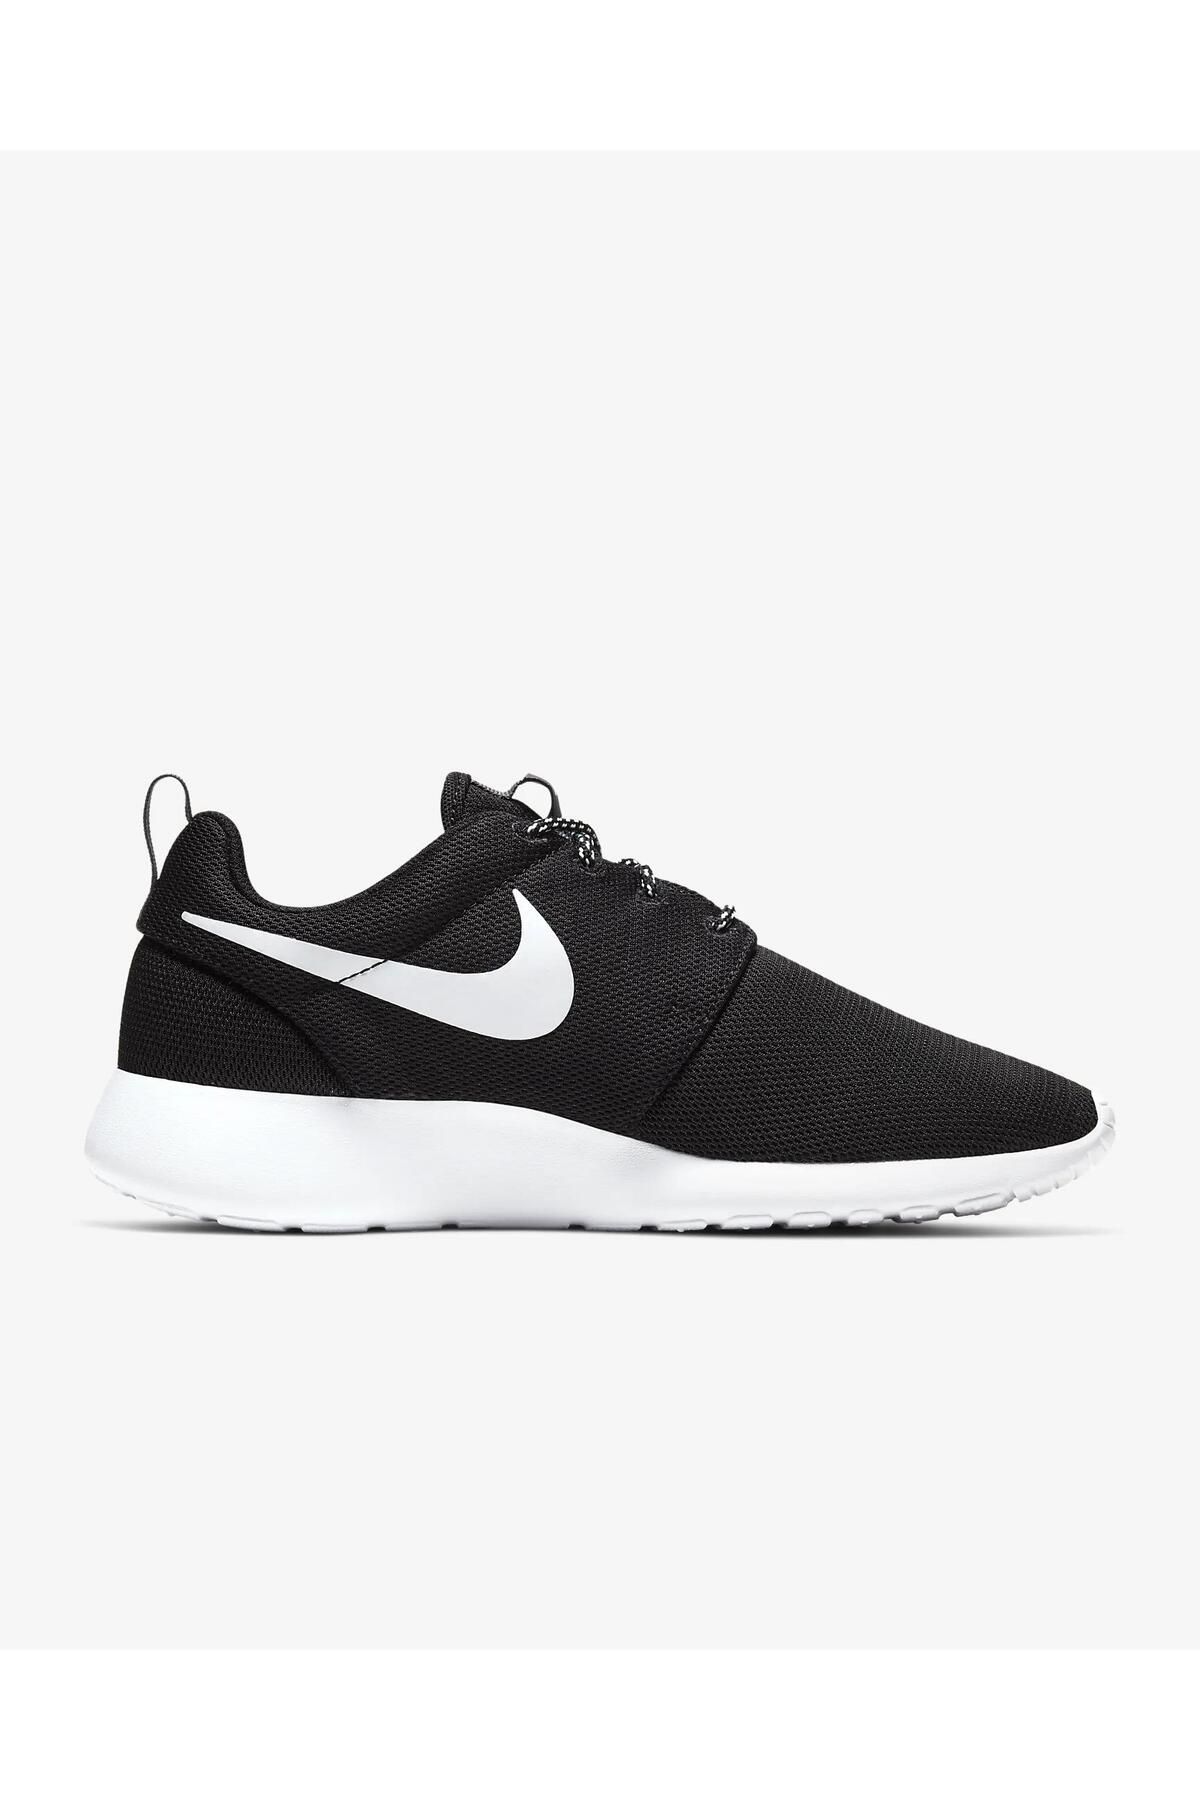 Nike Roshe One Siyah Günlük Yürüyüş Kadın Ayakkabısı 844994-002